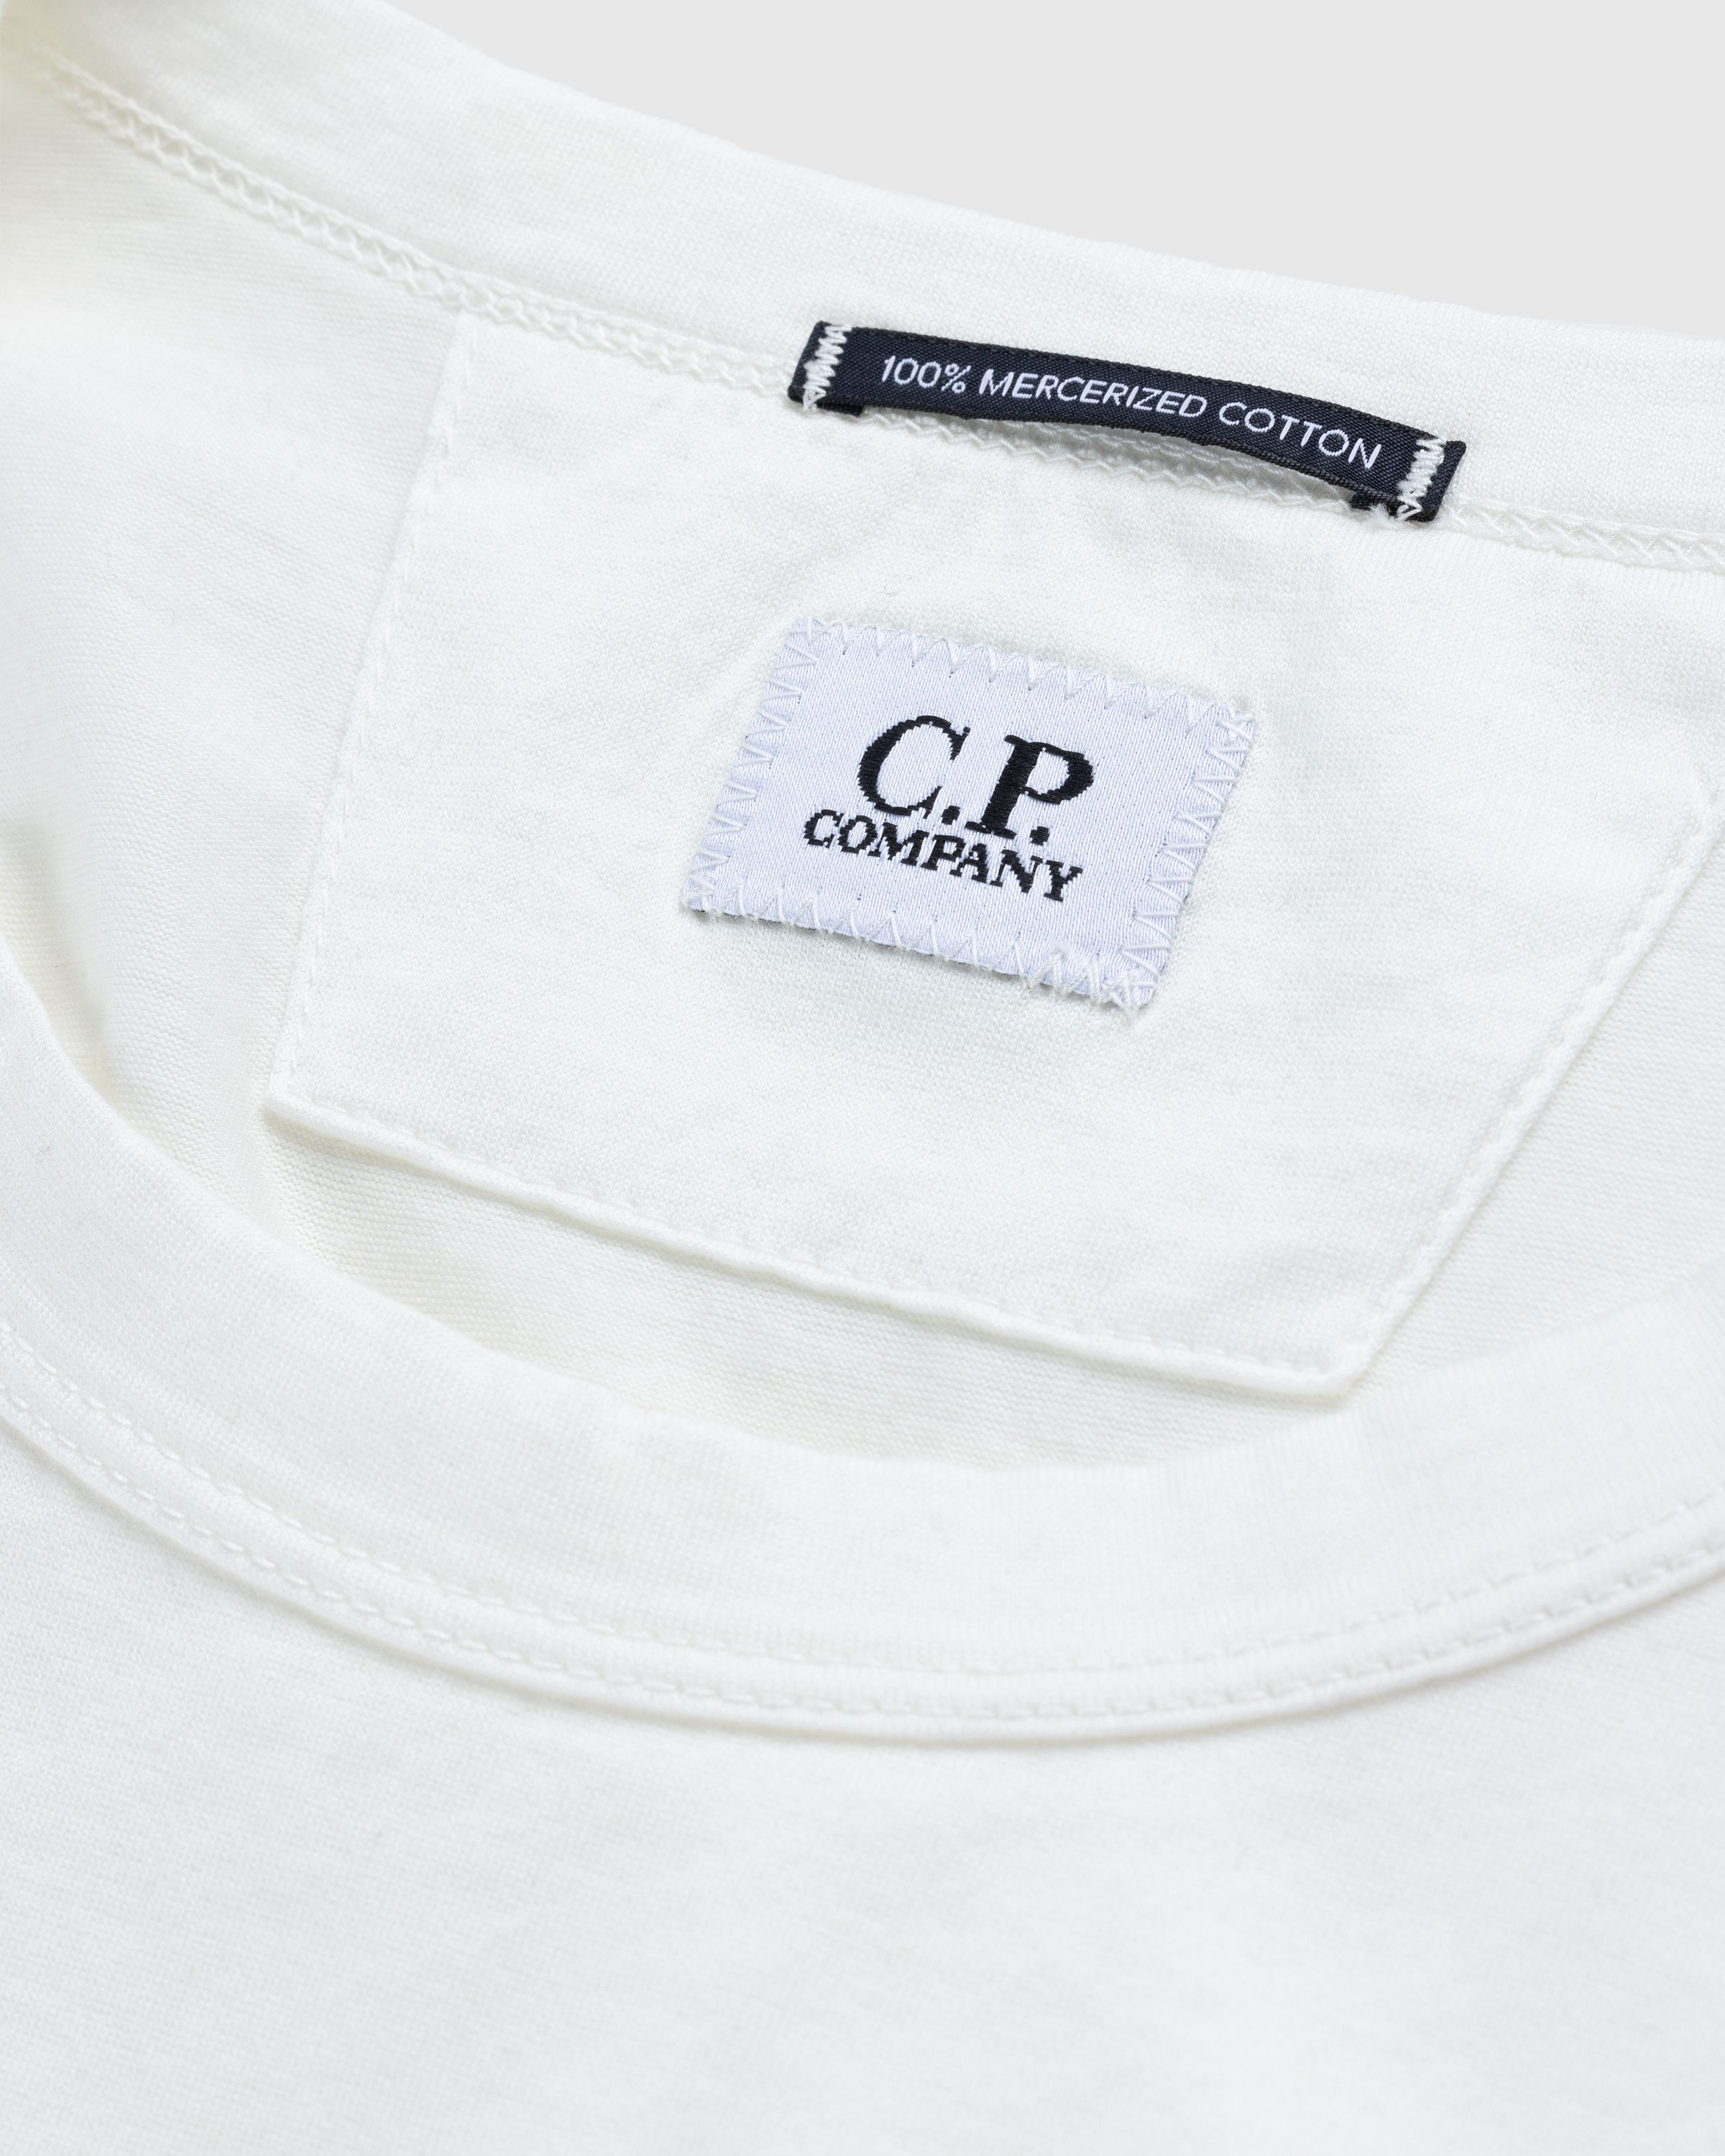 C.P. Company - T-Shirts - Long Sleeve - Clothing - White - Image 5